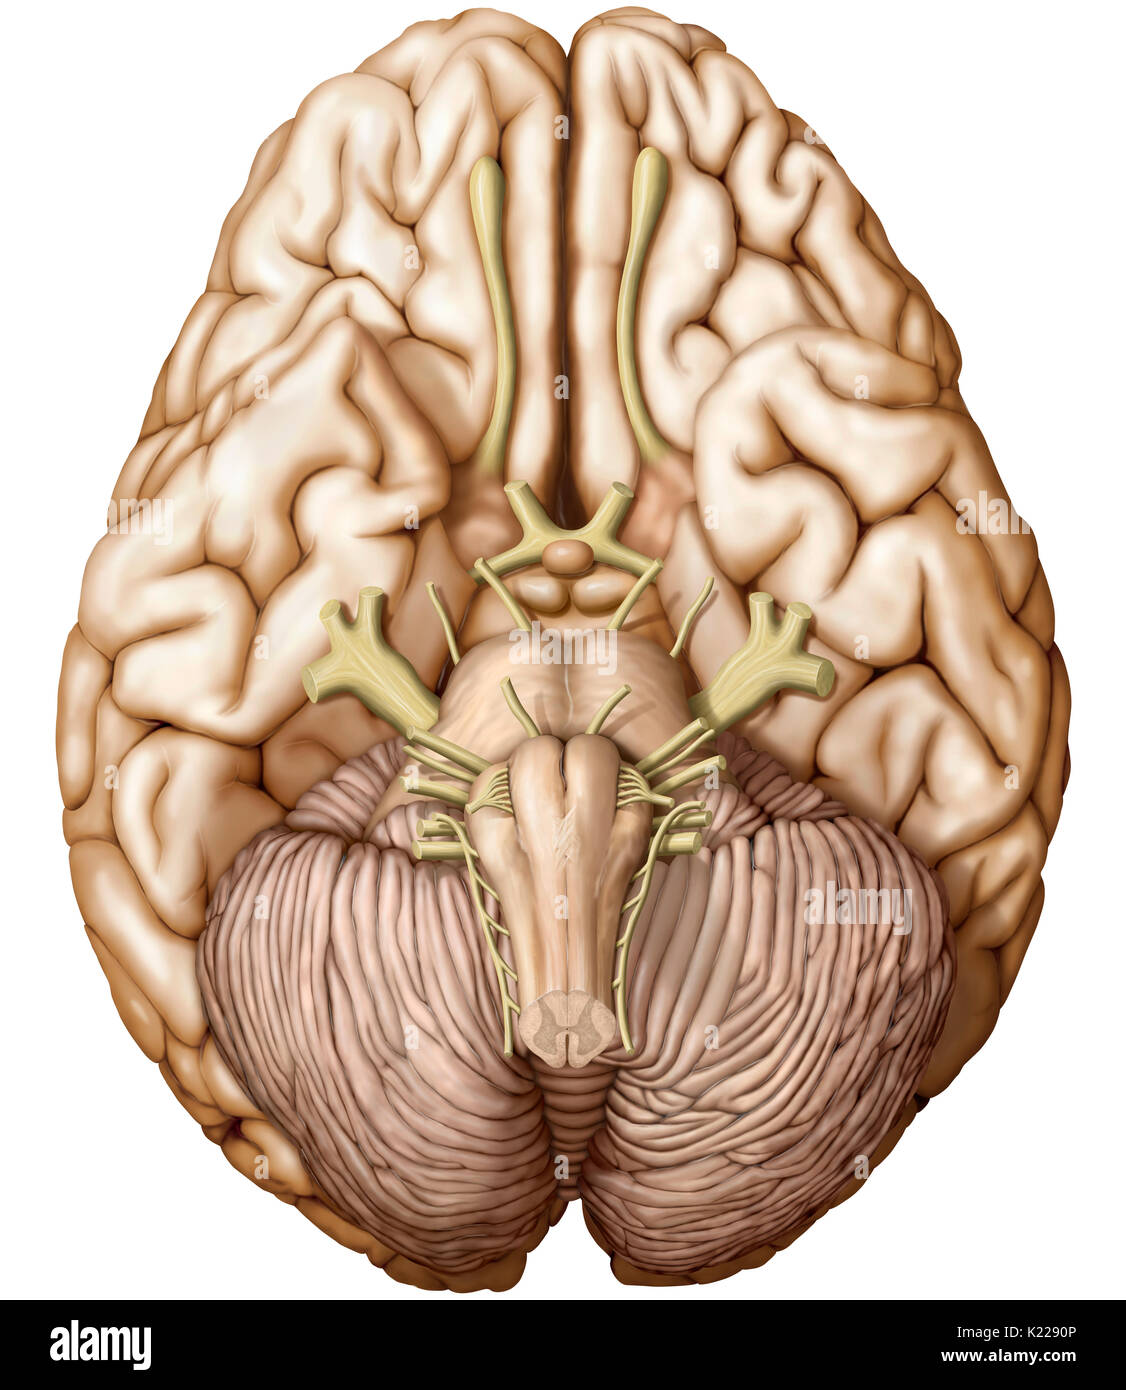 Teil des zentralen Nervensystems im Schädel eingeschlossen, bestehend aus dem Großhirn, Kleinhirn und Hirnstamm; es ist verantwortlich für die Sinneswahrnehmung, die meisten Bewegungen, Speicher, Sprache, Reflexe und lebenswichtige Funktionen. Stockfoto